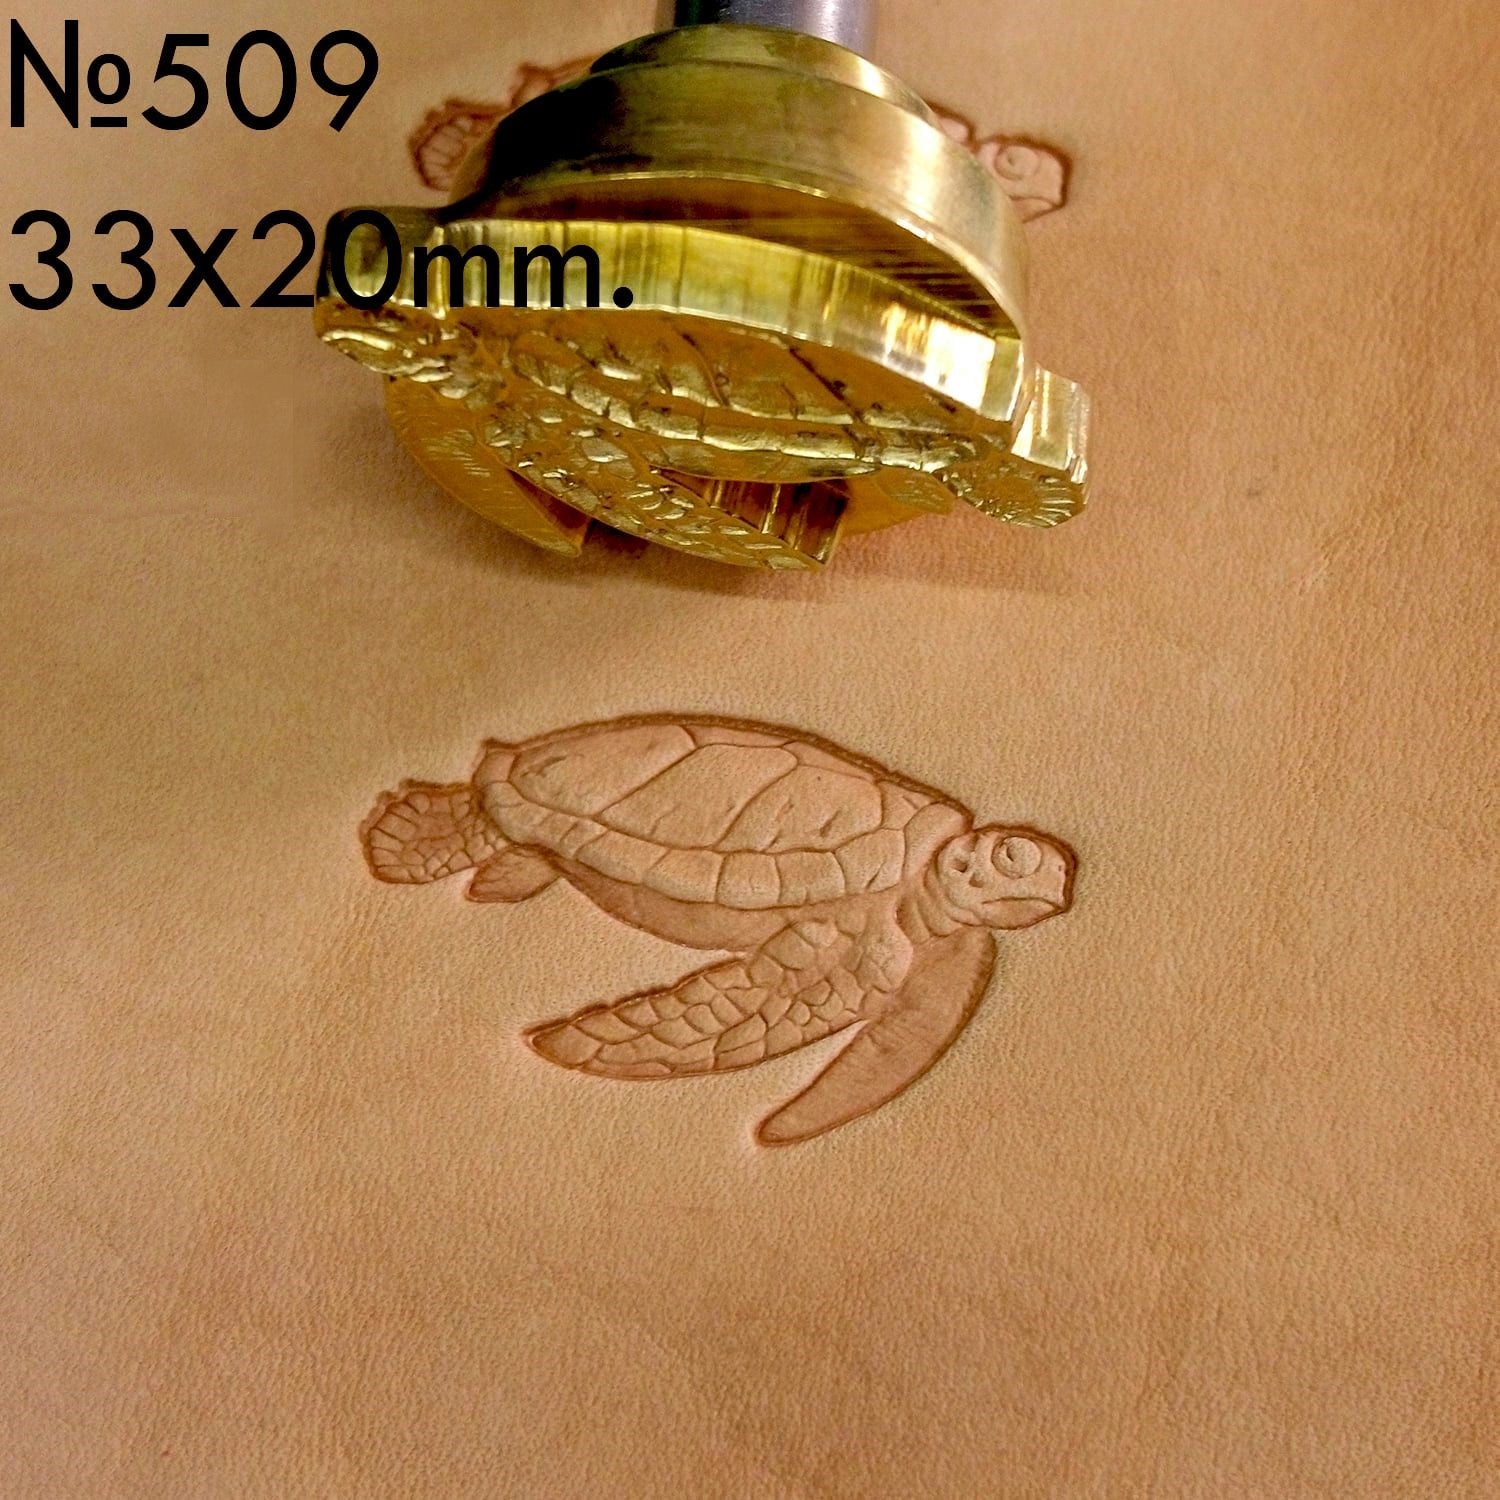 Leather Stamp Tool - Sea Turtle #509